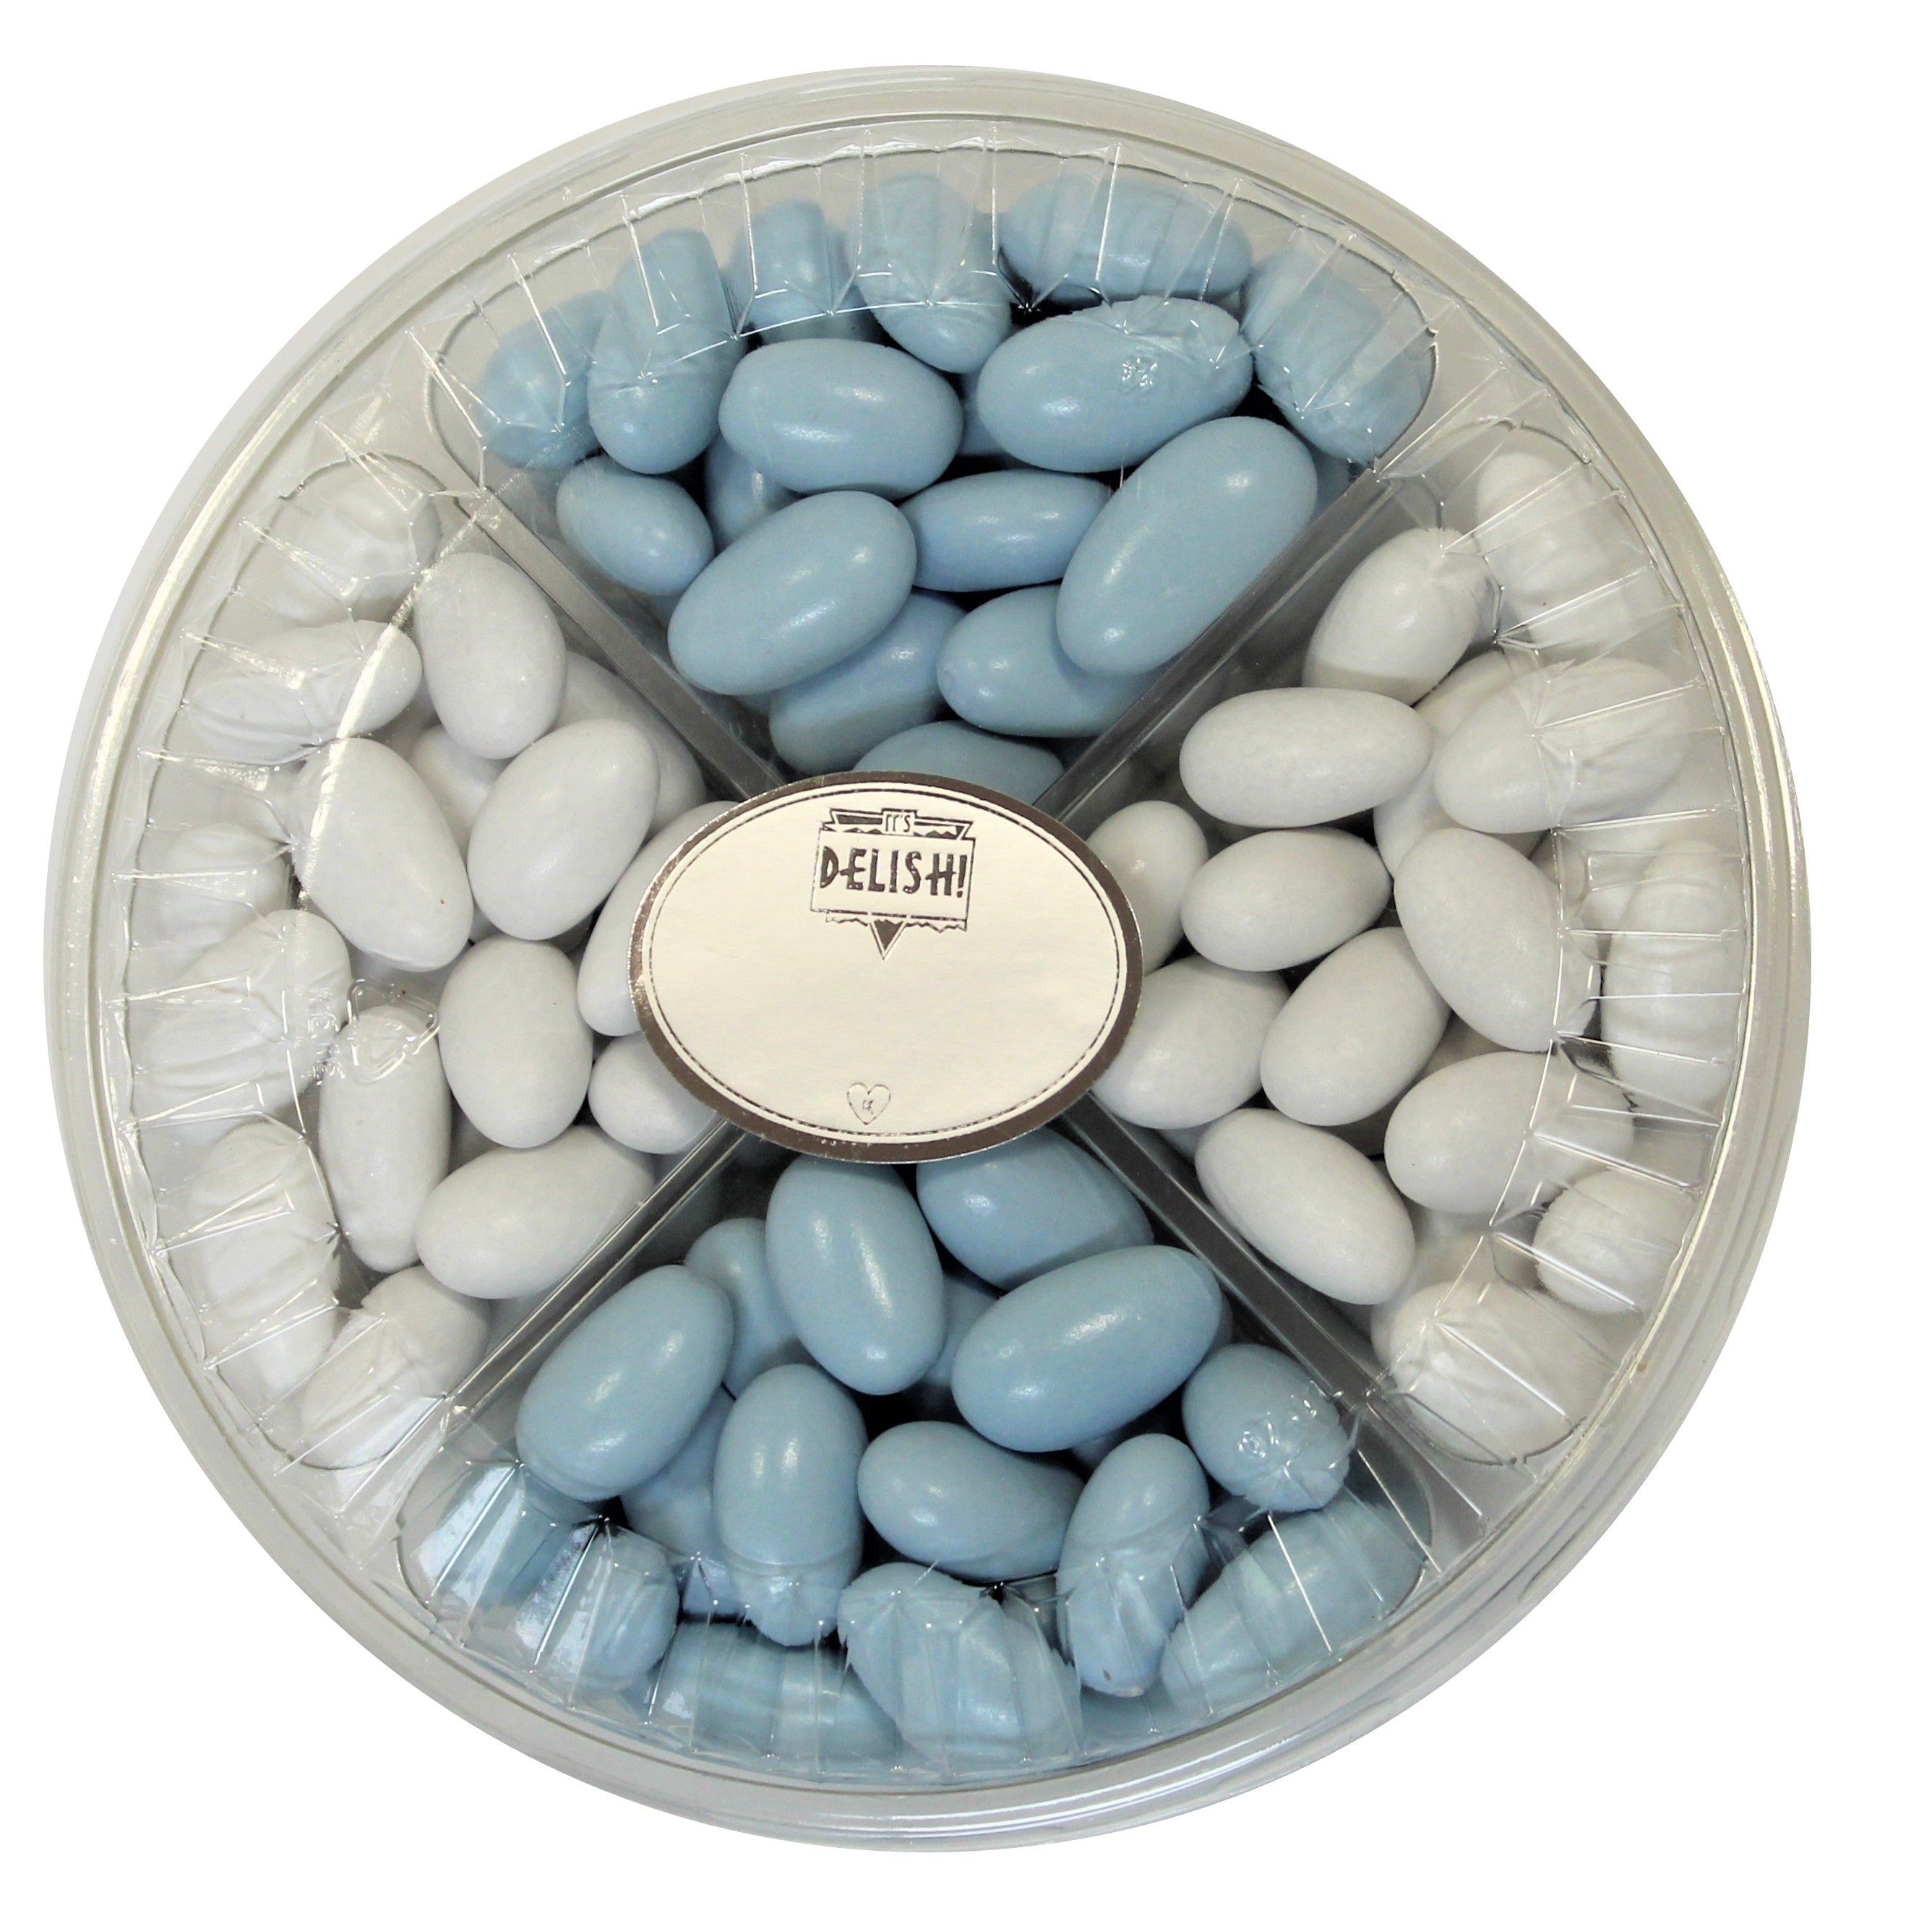 It's A Boy! Jordan Almond Gift Tray (Pastel Blue & White, 4 Section) - Its Delish